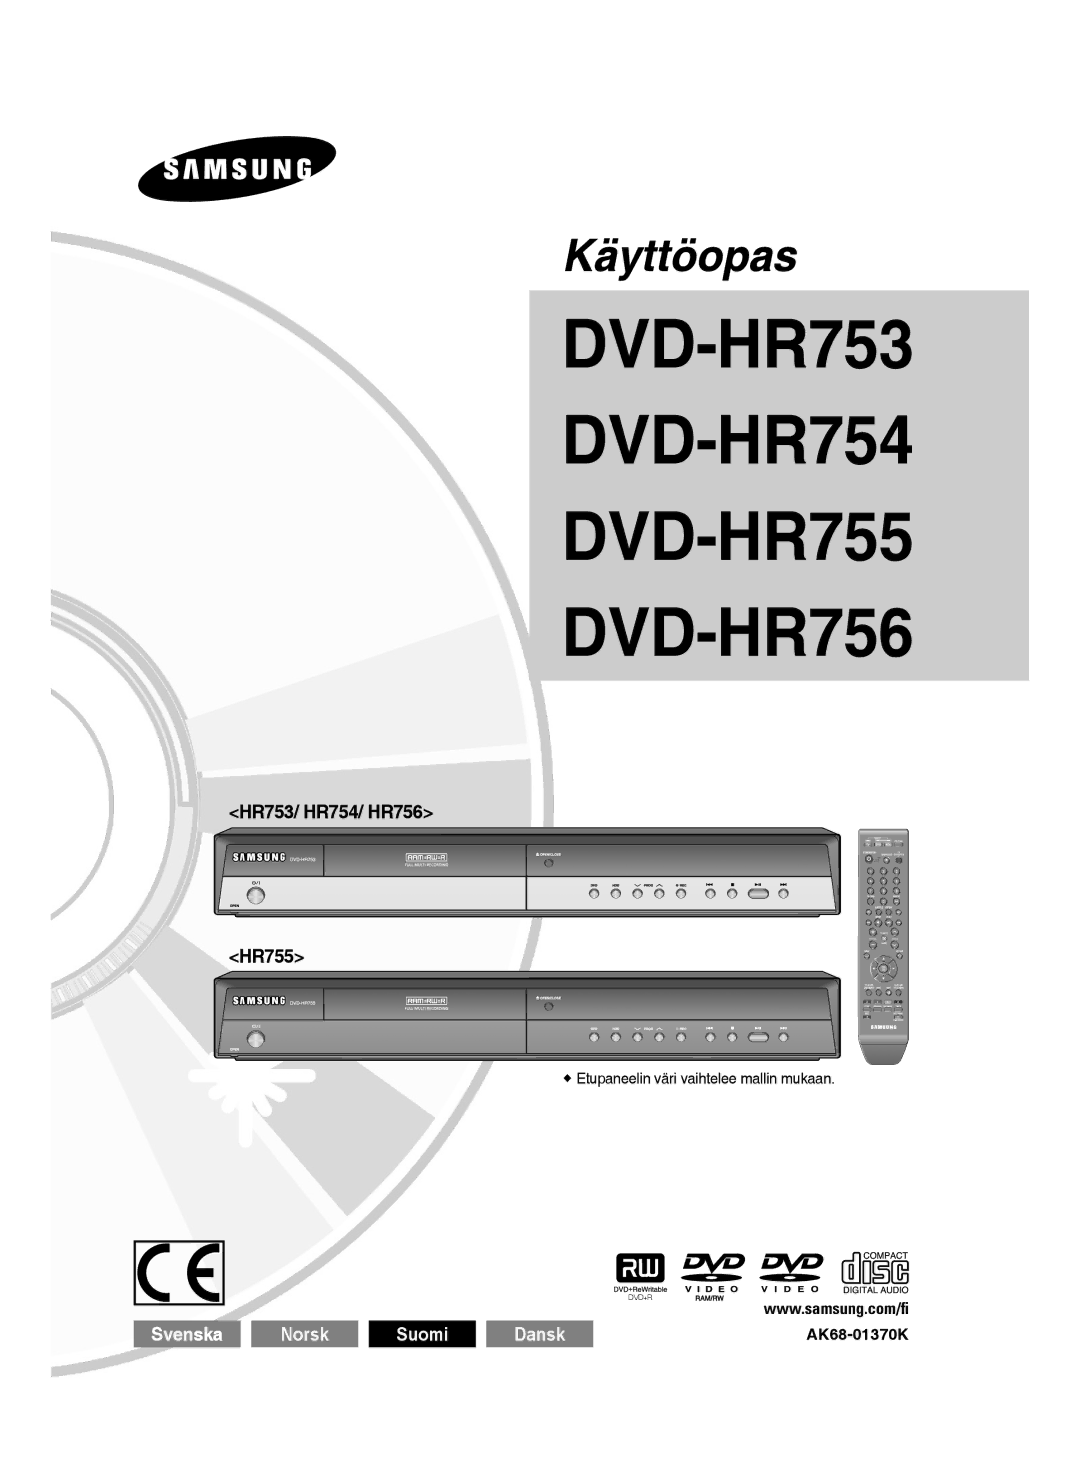 Samsung DVD-HR753/XEE, DVD-HR756/XEE manual HR753/ HR754/ HR756 HR755,  Etupaneelin väri vaihtelee mallin mukaan 